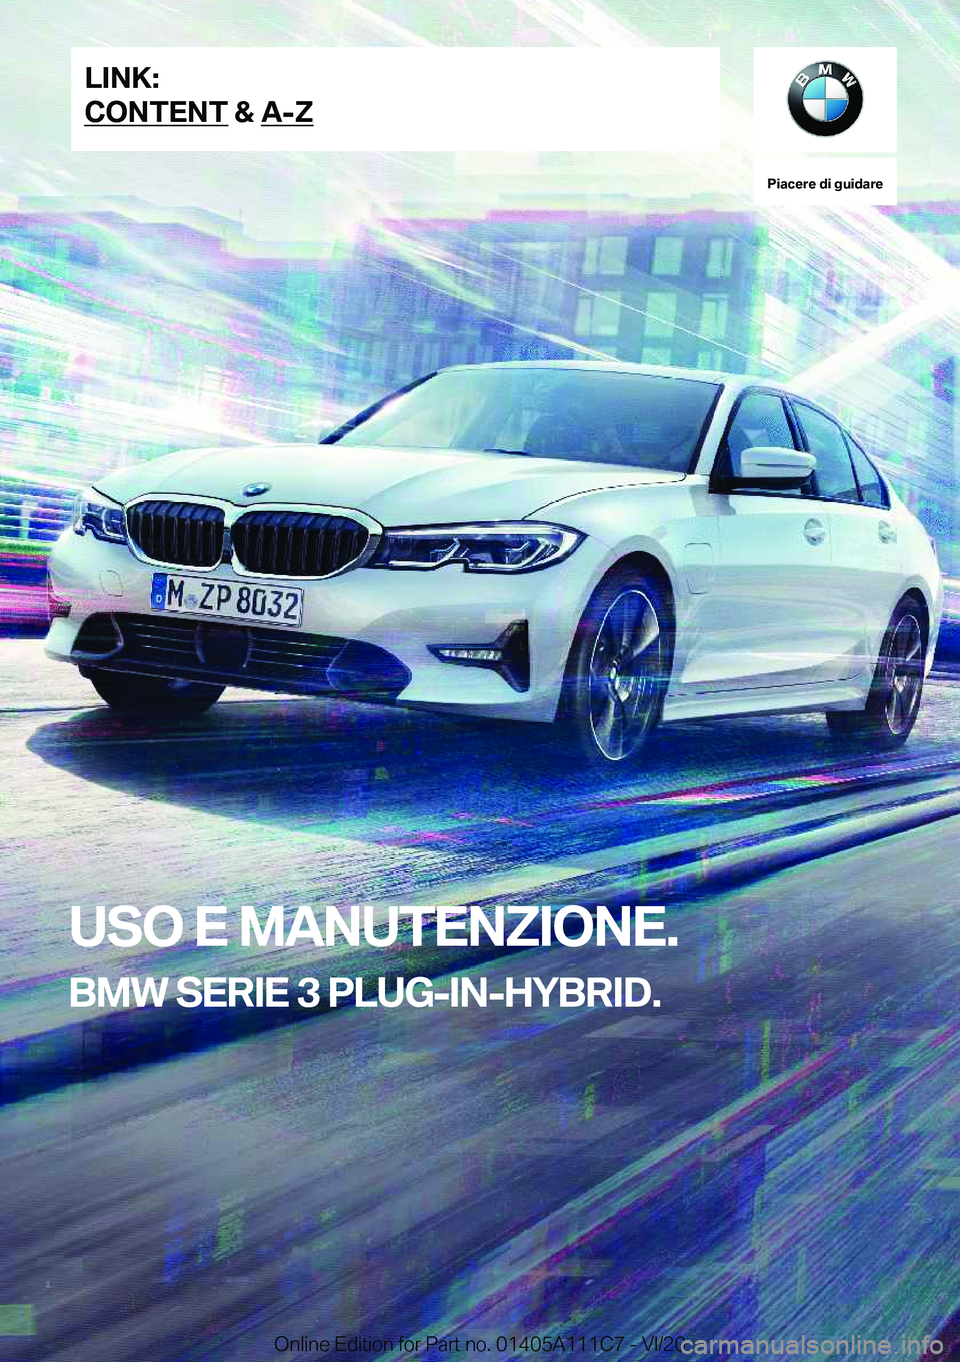 BMW 3 SERIES SEDAN PLUG-IN HYBRID 2021  Libretti Di Uso E manutenzione (in Italian) �P�i�a�c�e�r�e��d�i��g�u�i�d�a�r�e
�U�S�O��E��M�A�N�U�T�E�N�Z�I�O�N�E�.
�B�M�W��S�E�R�I�E��3��P�L�U�G�-�I�N�-�H�Y�B�R�I�D�.�L�I�N�K�:
�C�O�N�T�E�N�T��&��A�-�Z�O�n�l�i�n�e��E�d�i�t�i�o�n��f�